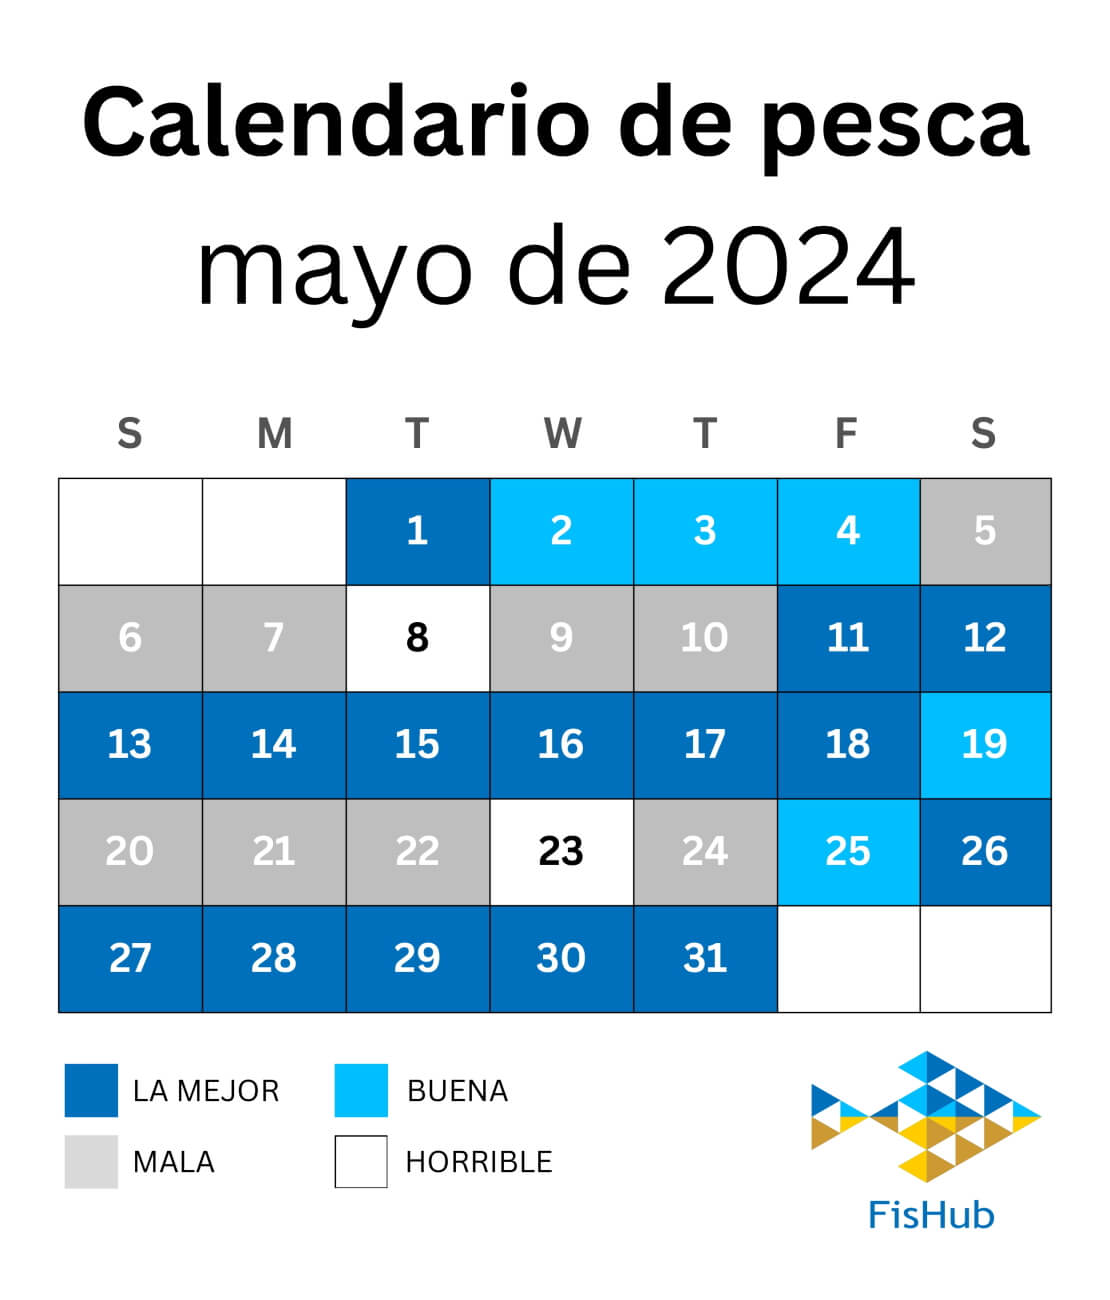 Calendario de pescadores para mayo de 2024